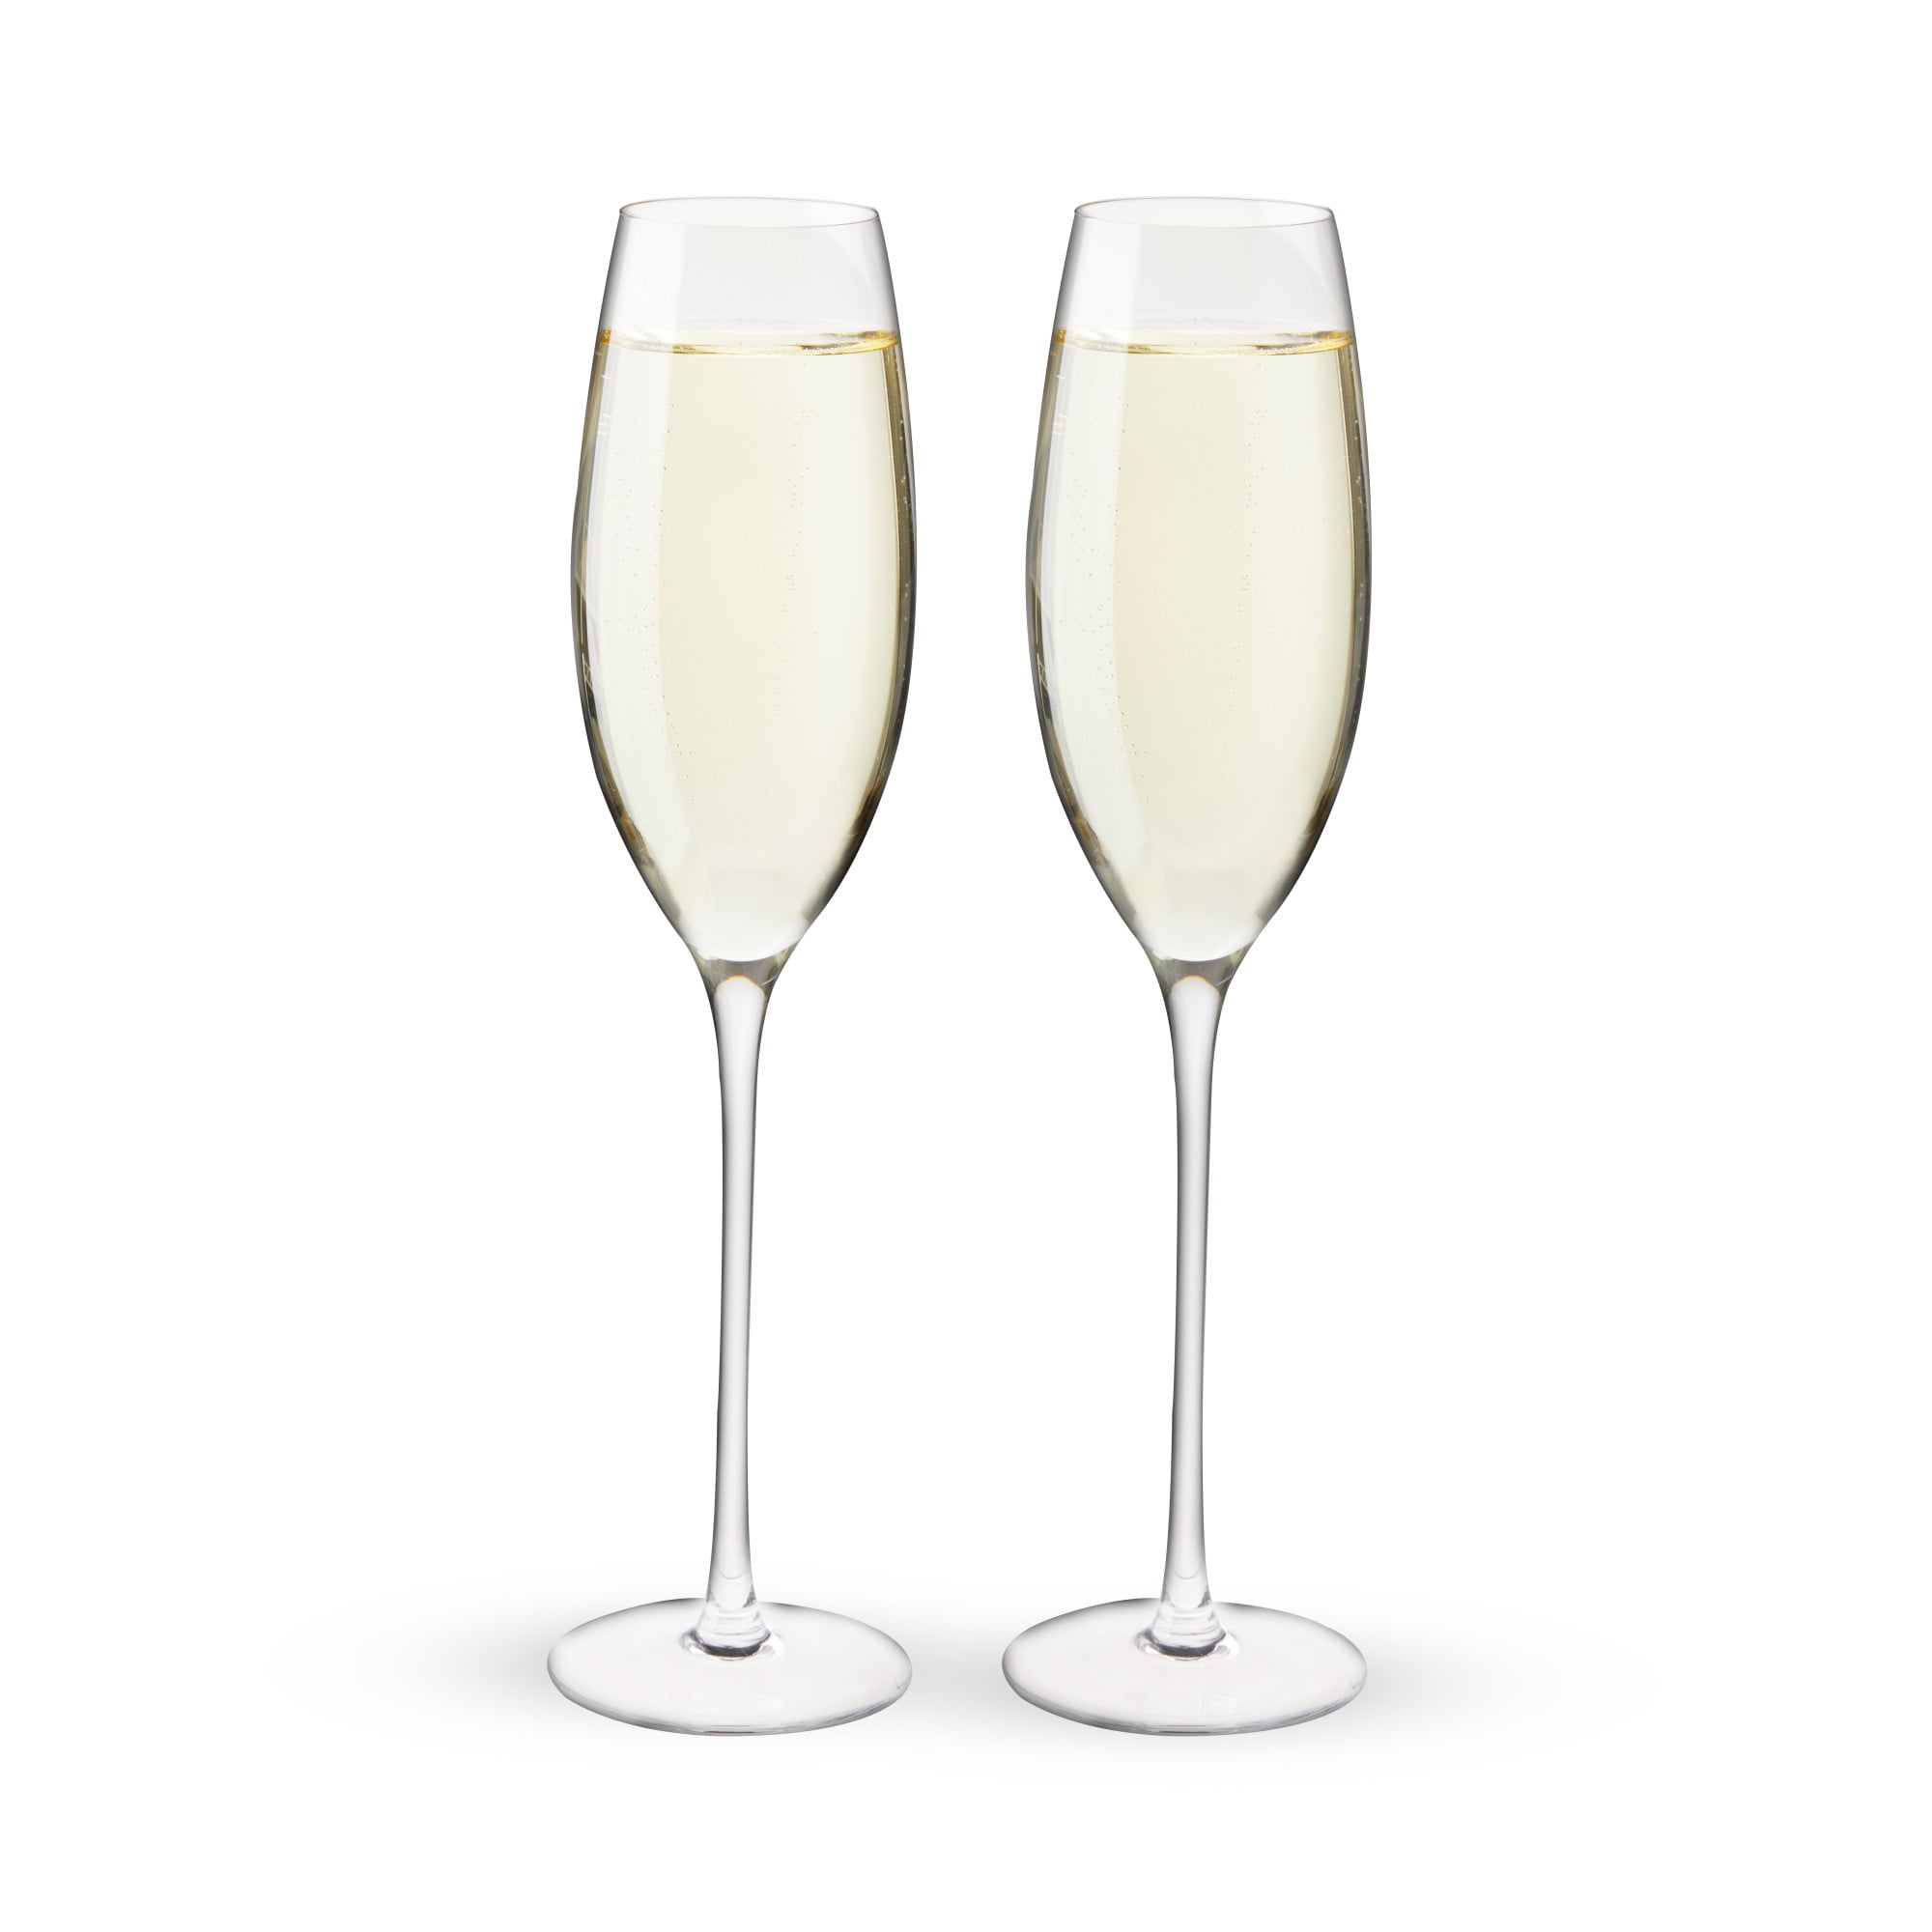 Inweder Verres Flûte Champagne Cristal - Lot de 2 Coupe Champagne